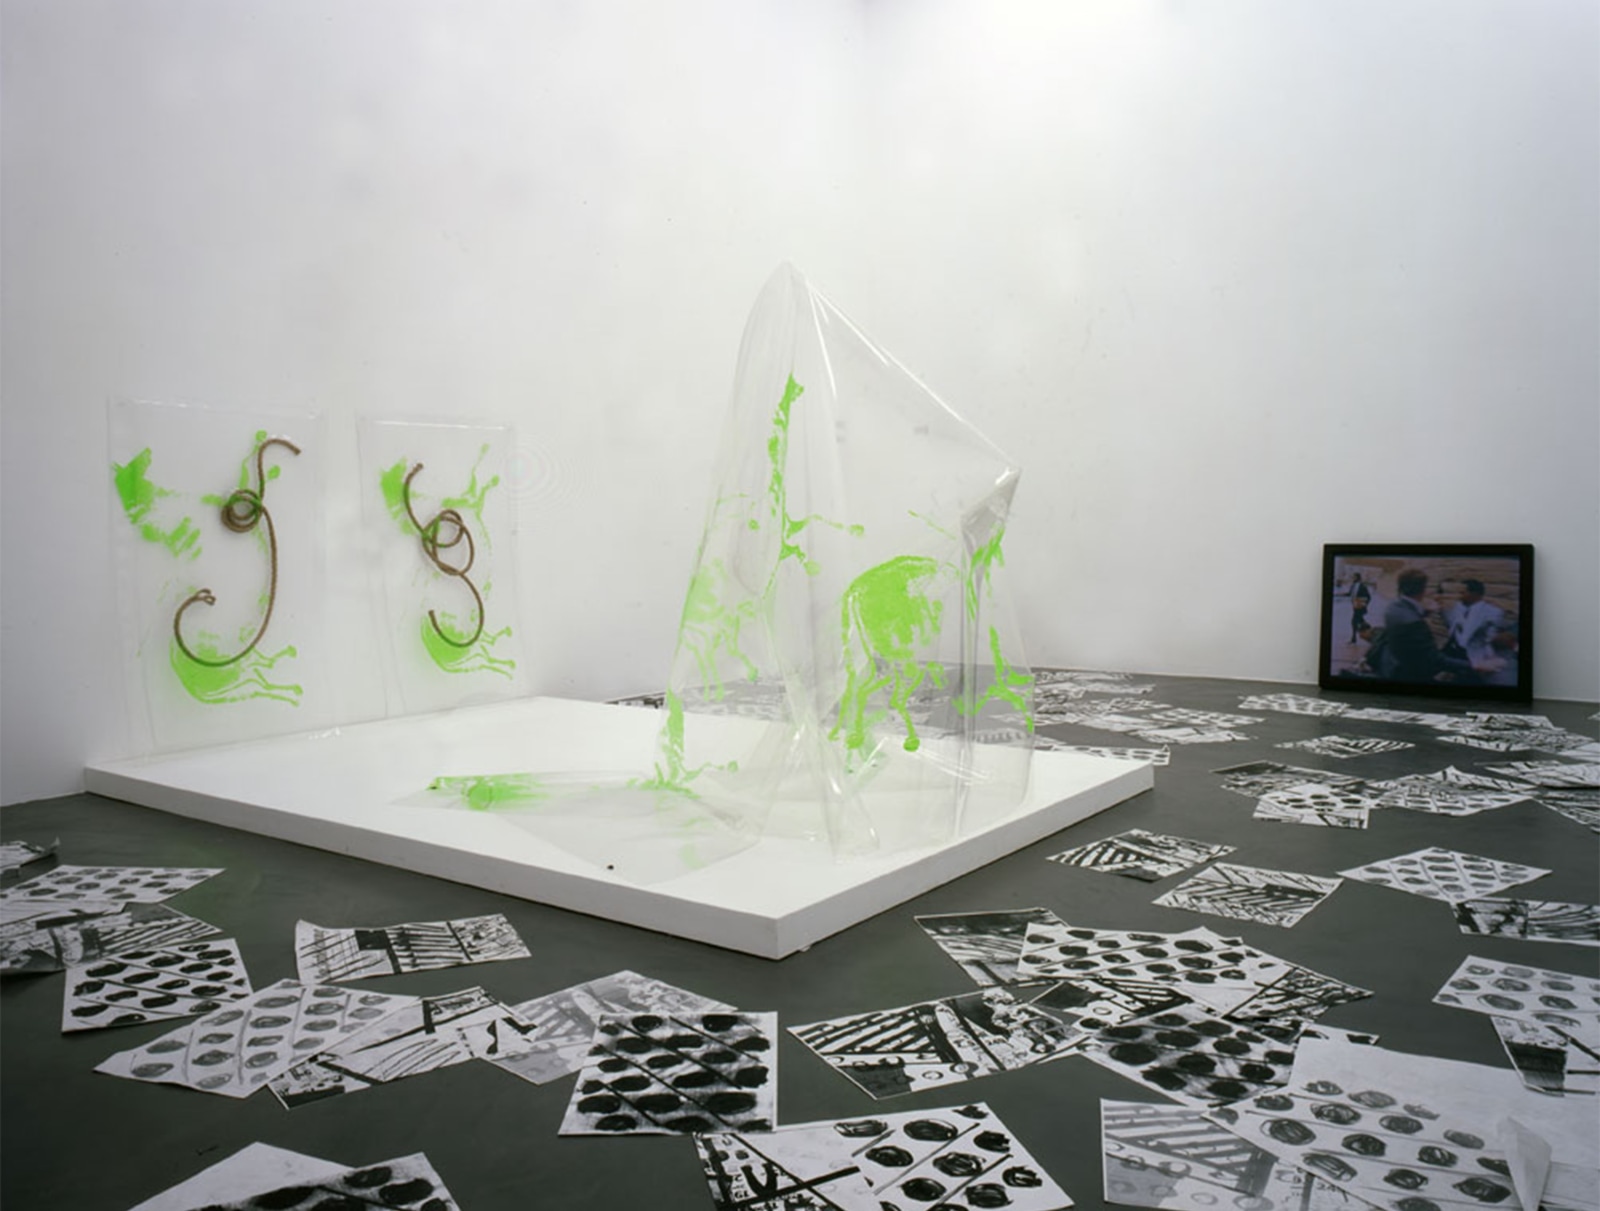 Installation view, Seth Price, Kunsthalle Zurich, 2008